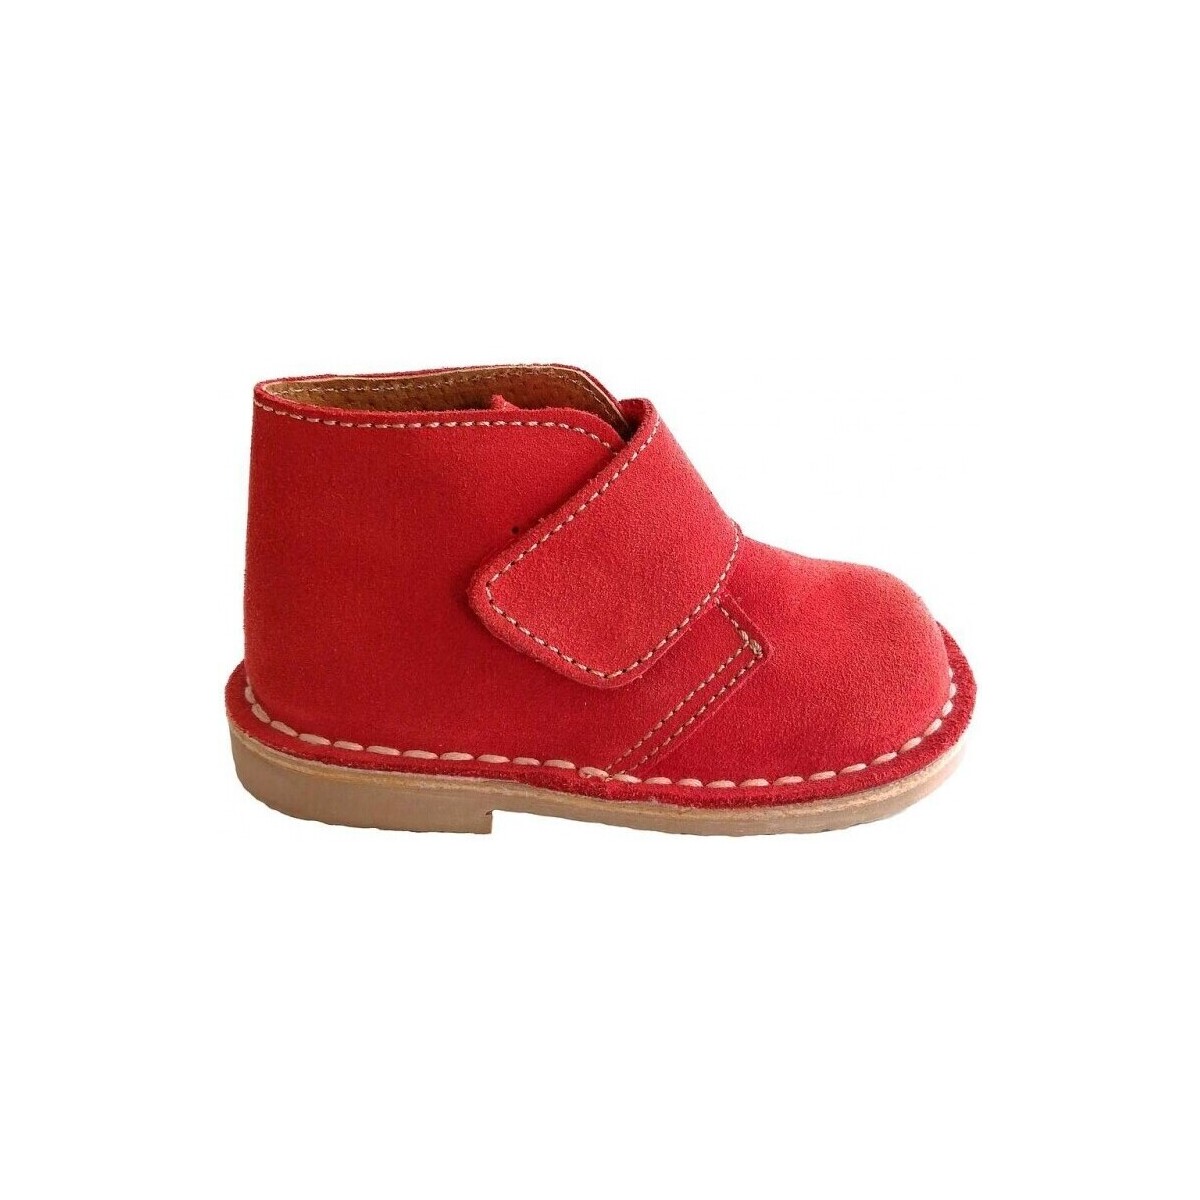 Zapatos Botas Colores 15150-18 Rojo